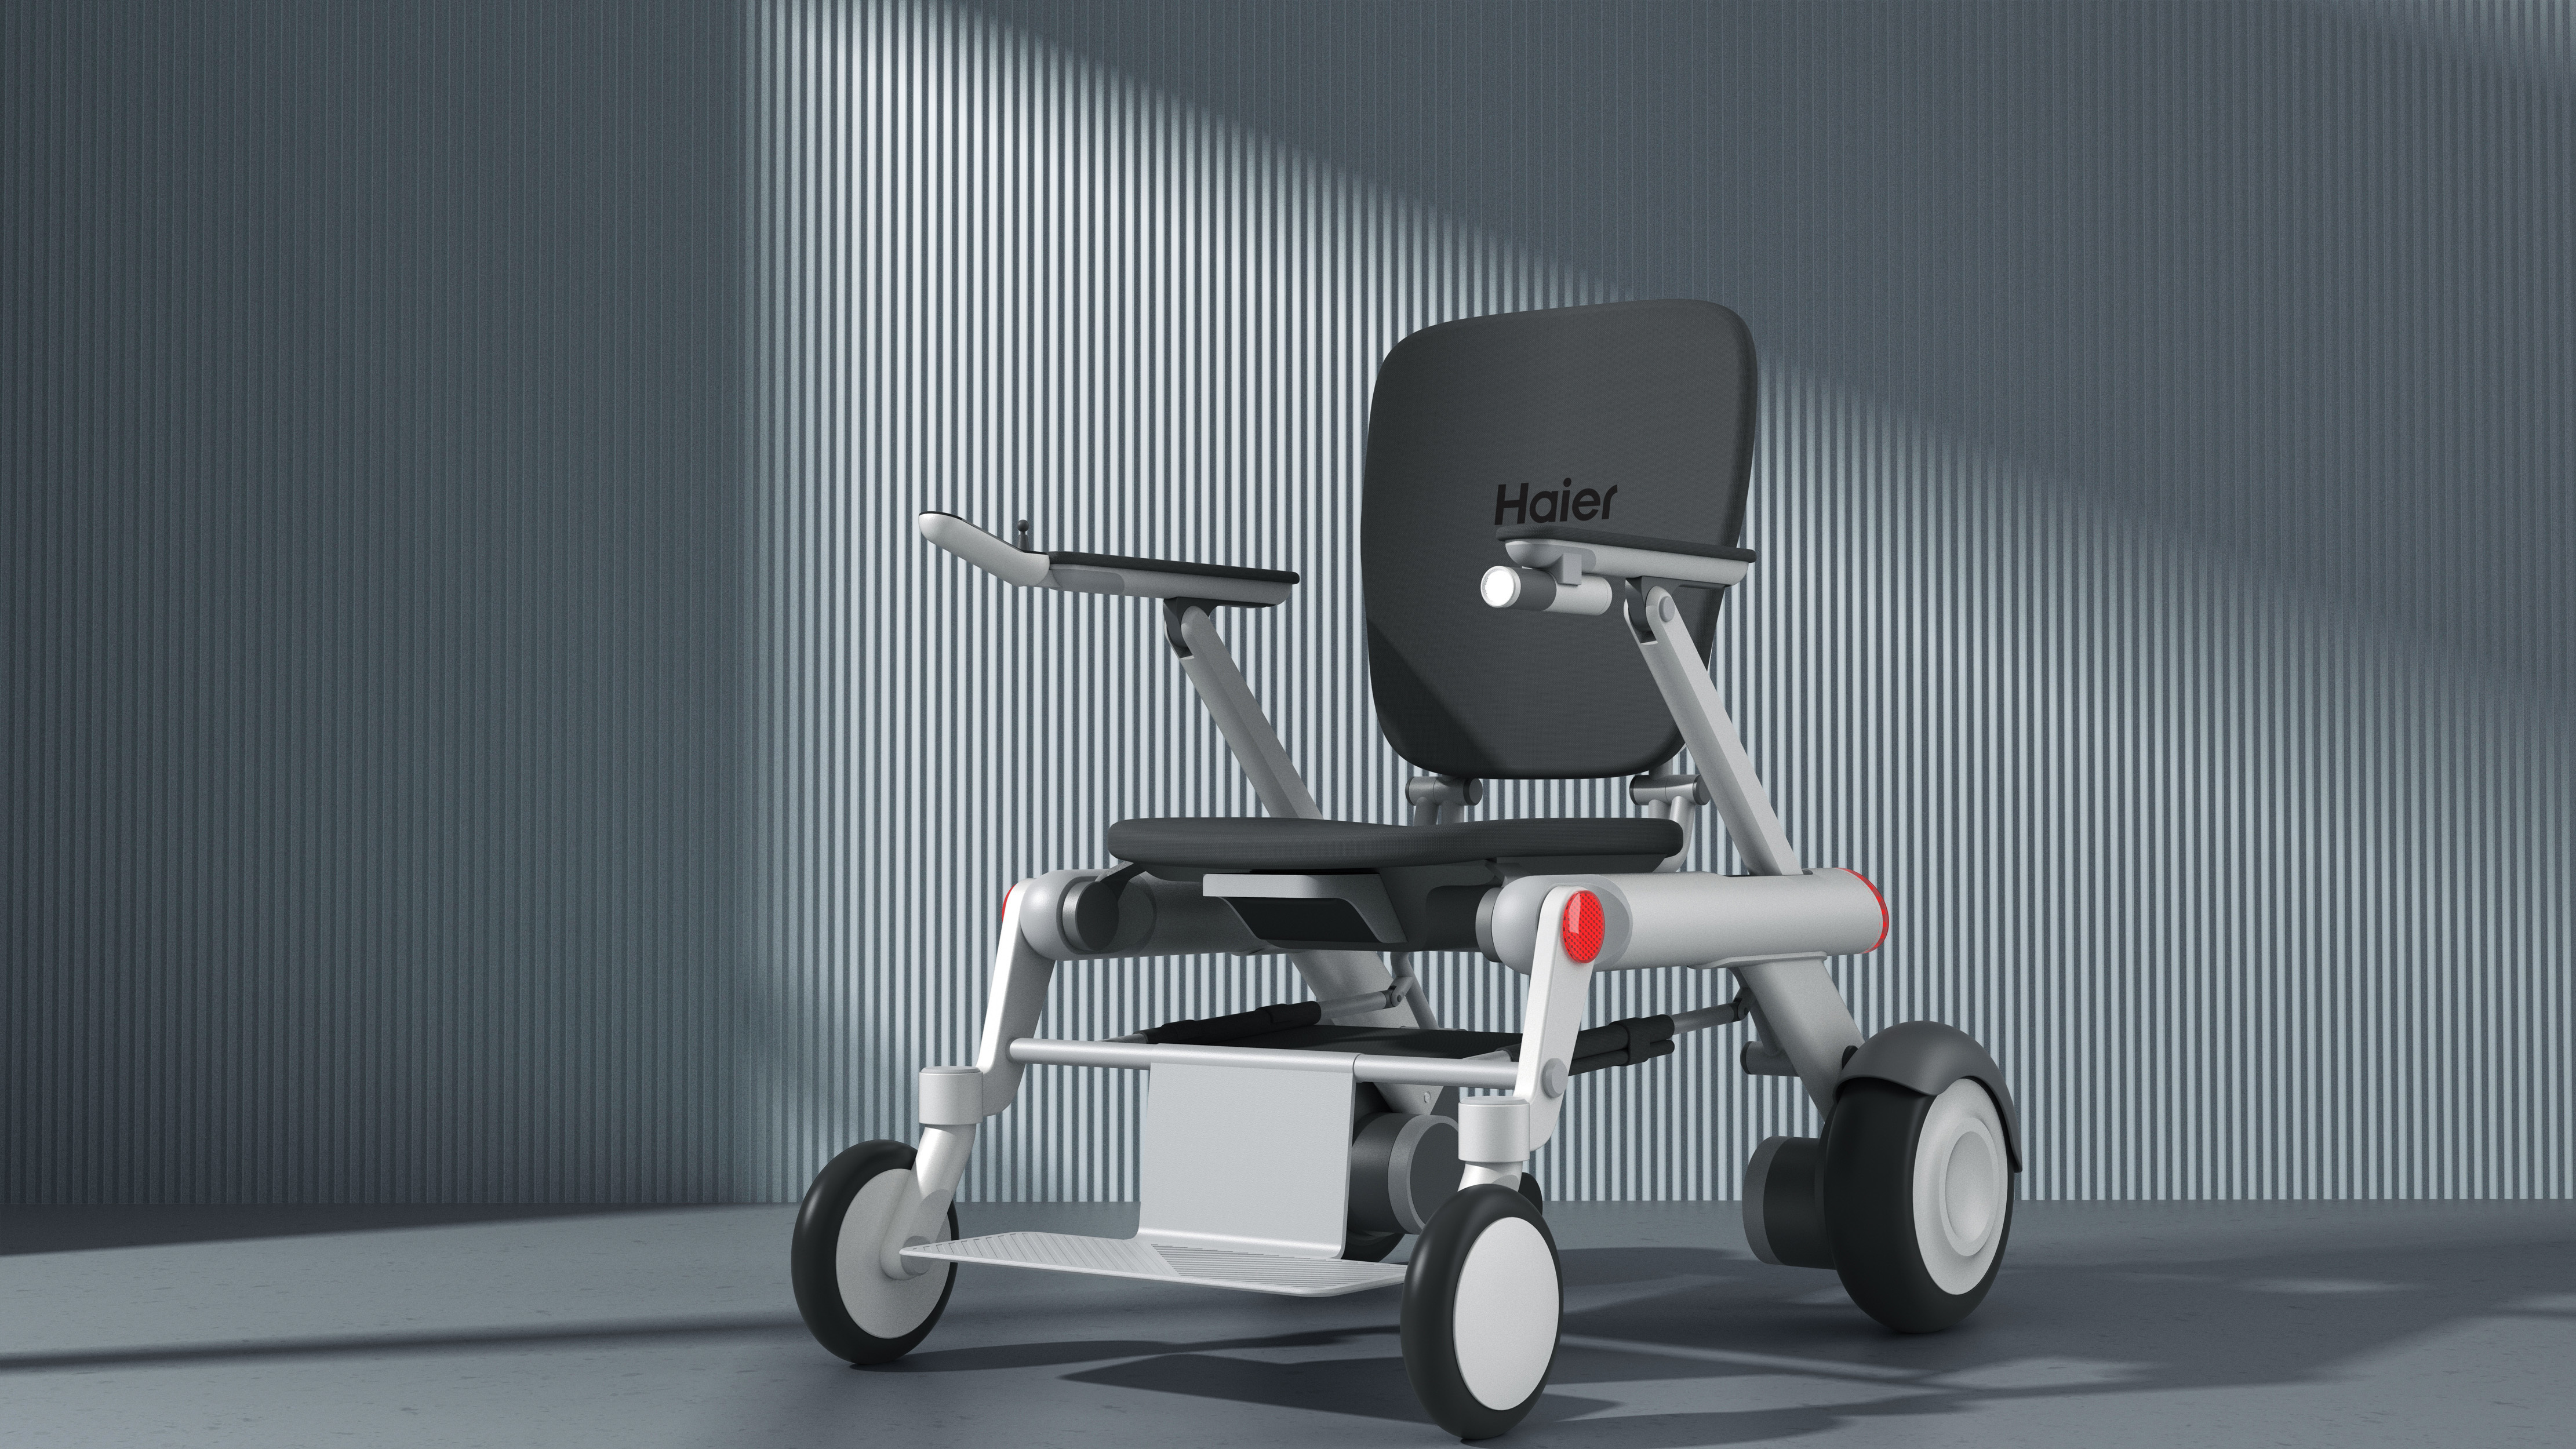 Haier Electric Wheelchair